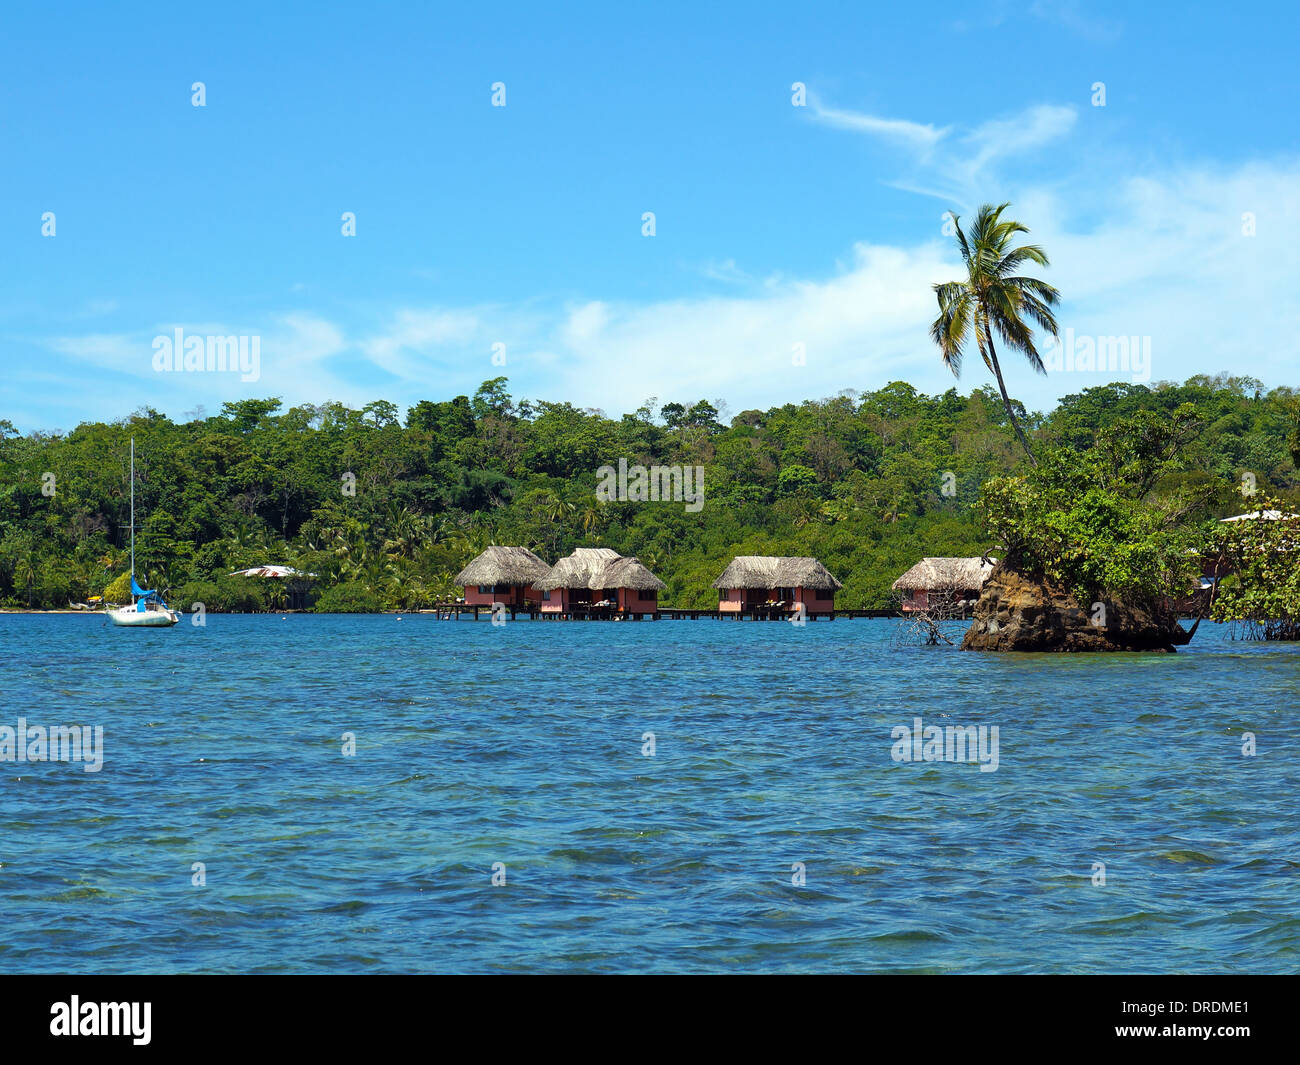 Isolotto con albero di cocco e in background cabine con tetto in paglia sopra l'acqua, il mare dei Caraibi, Bocas del Toro, Panama Foto Stock